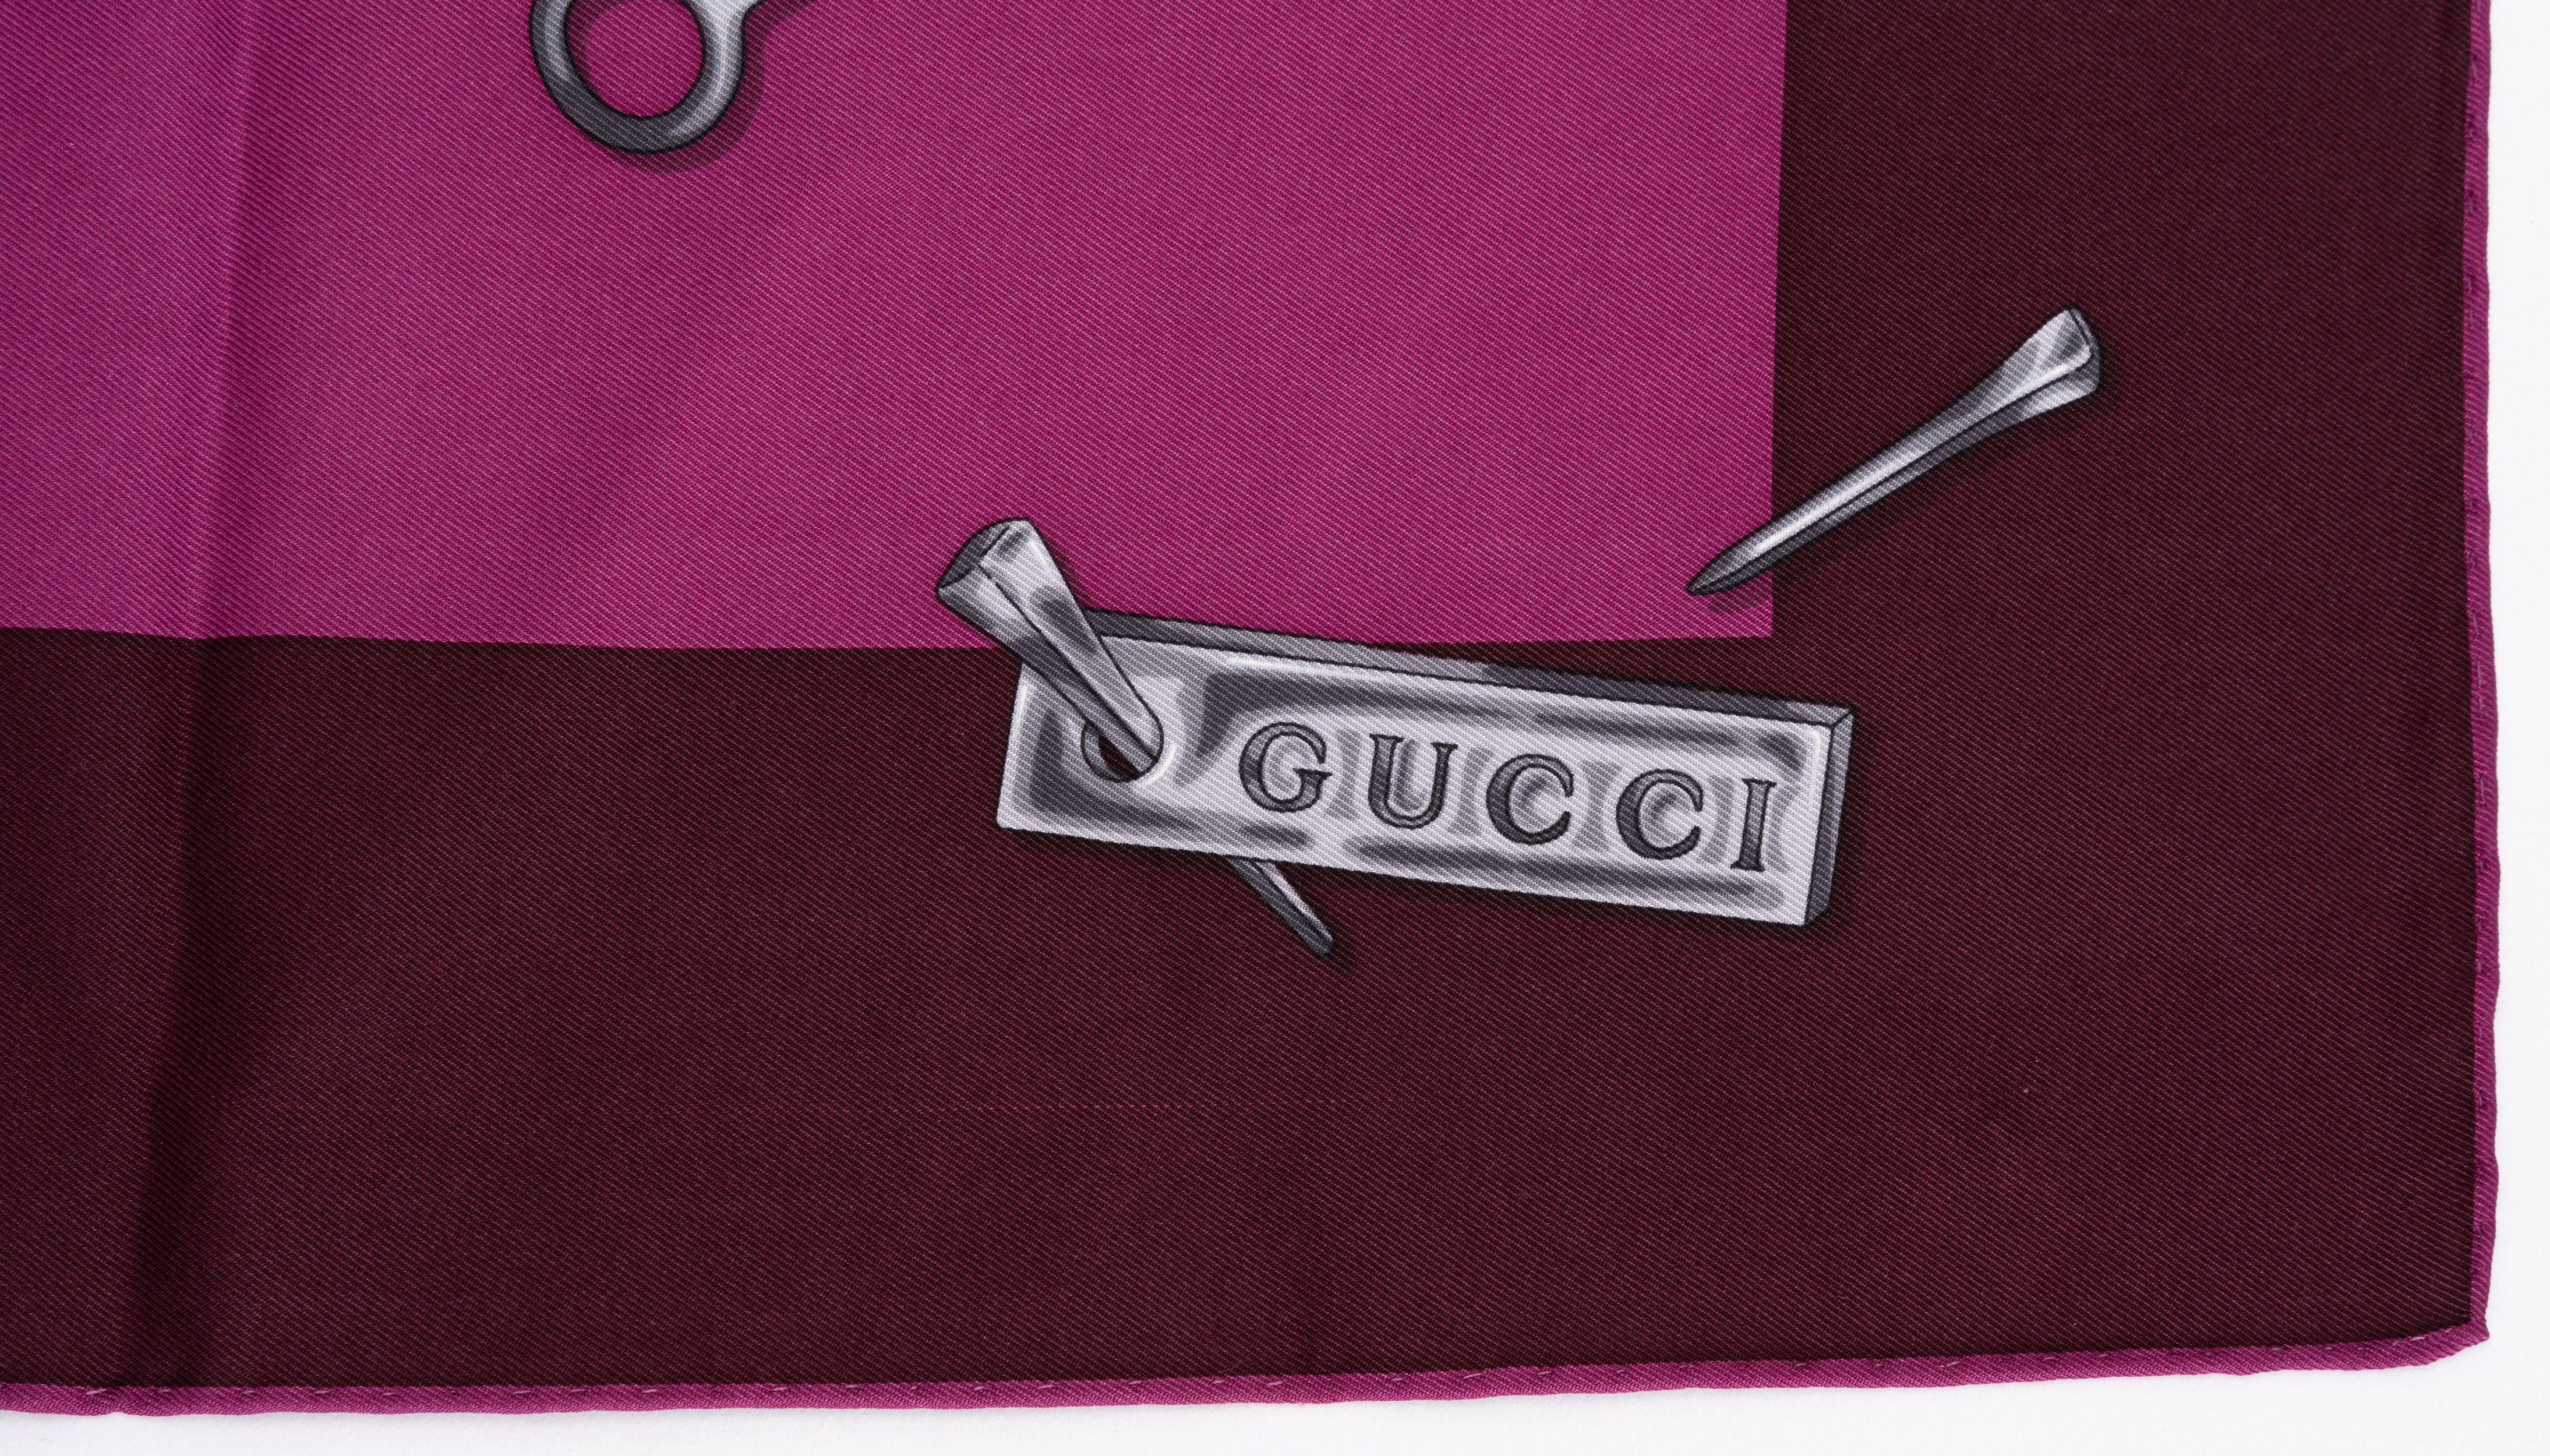 Gucci neuer lila zweifarbiger Seidenschal mit Pferdegebiss-Muster. Von Hand gerollte Kanten.